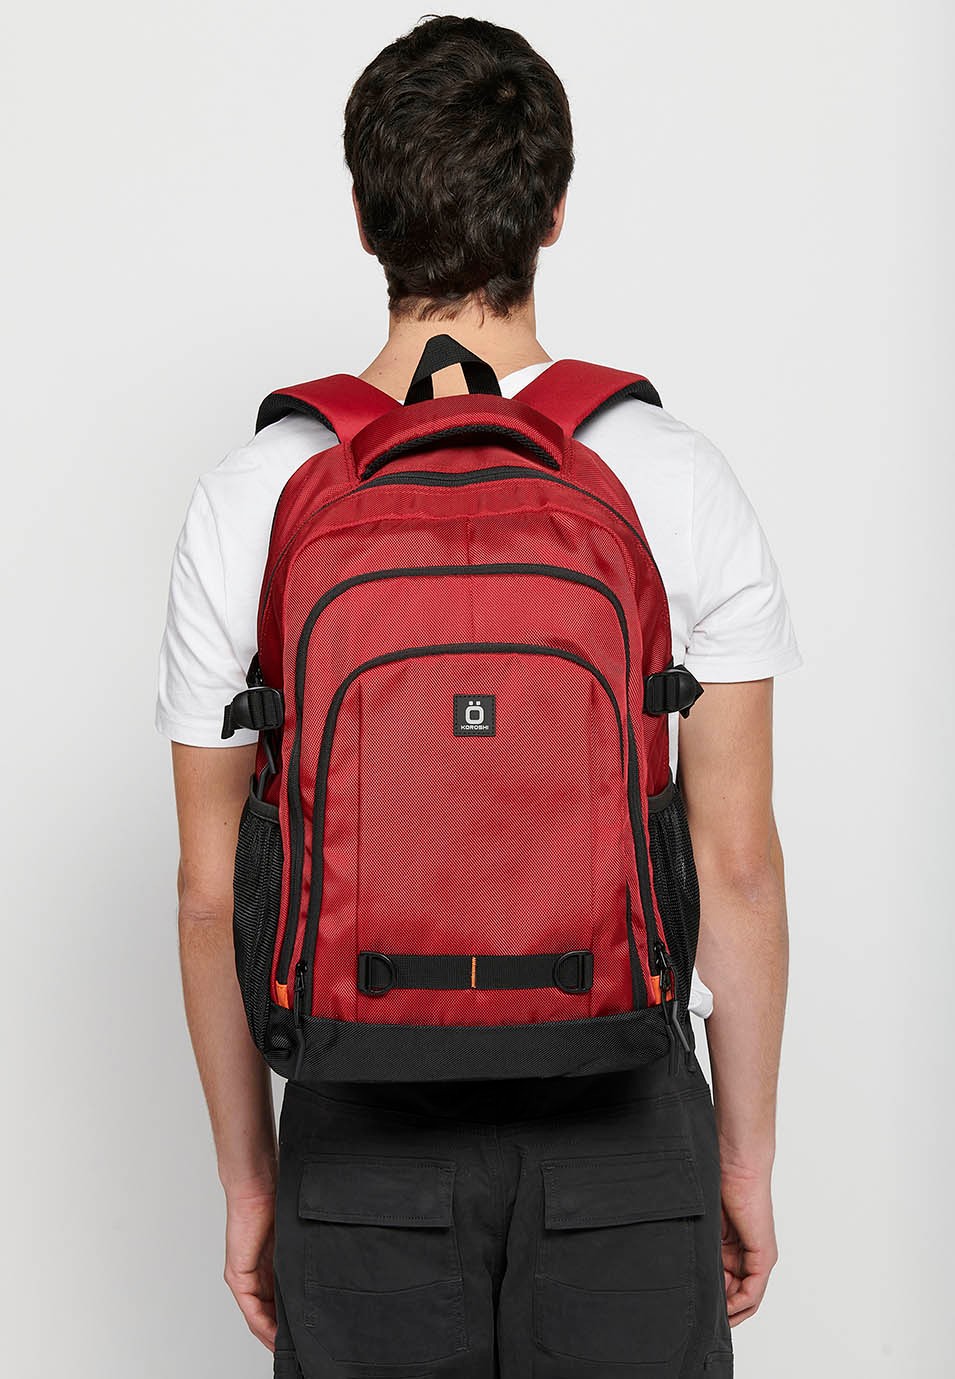 Koröshi-Rucksack mit drei Reißverschlussfächern, eines für Laptop, mit roten Innentaschen 6